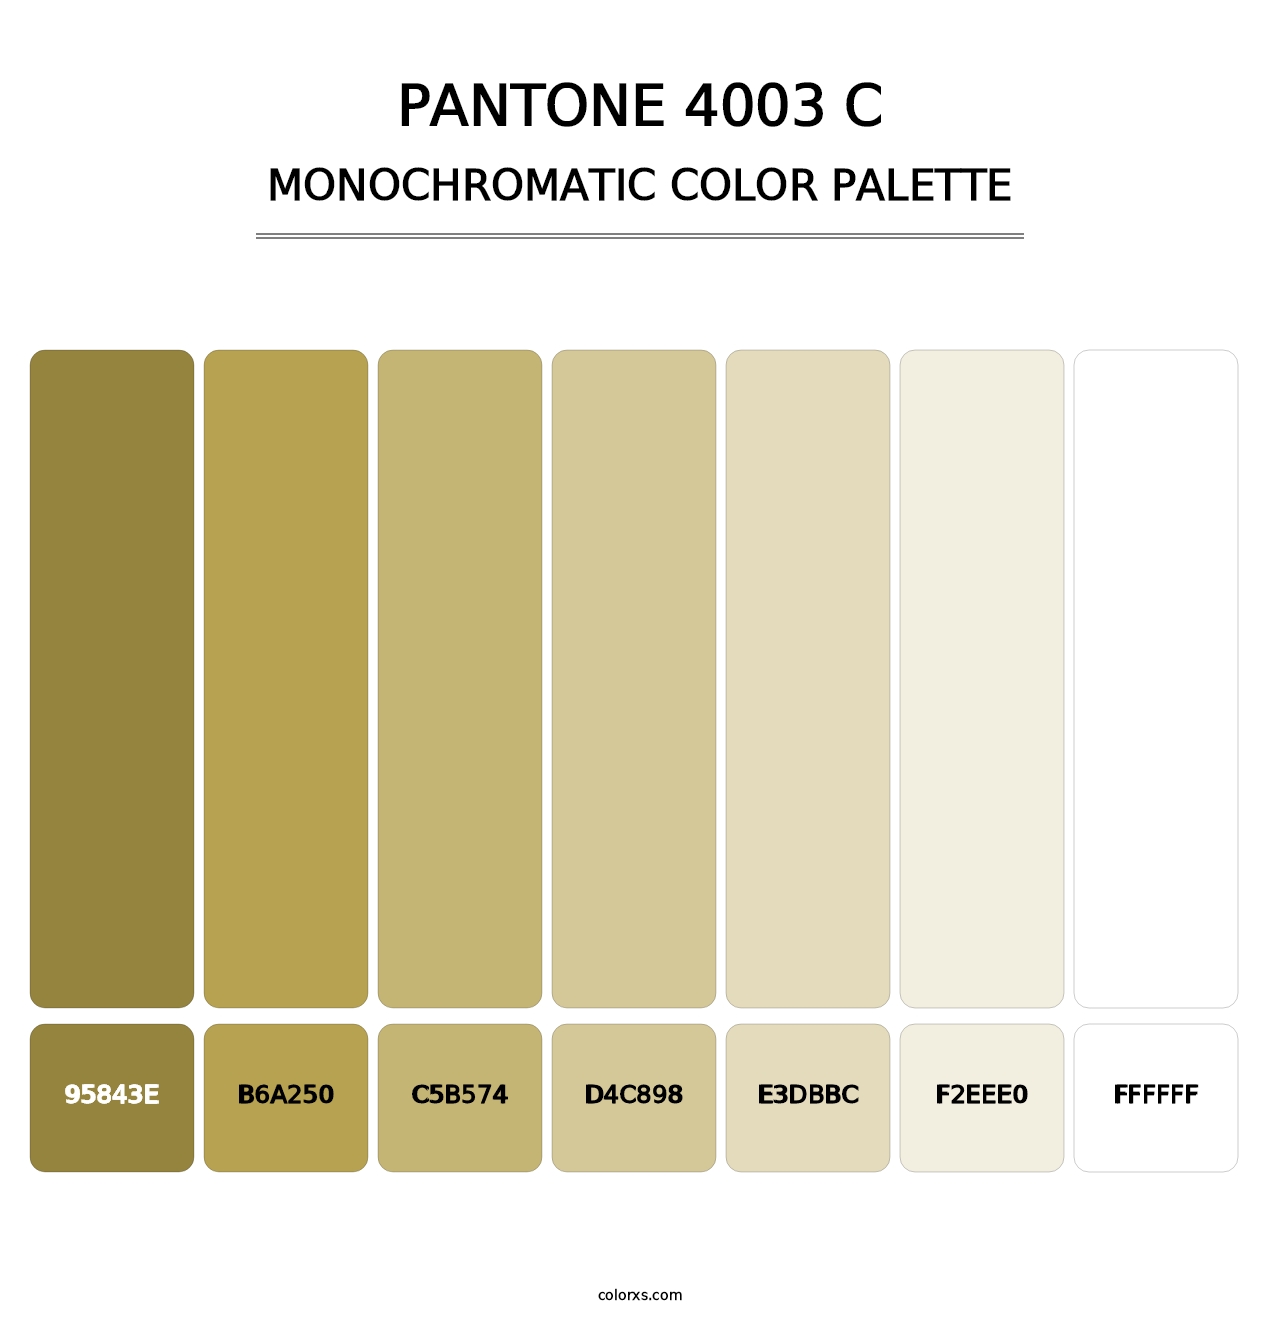 PANTONE 4003 C - Monochromatic Color Palette